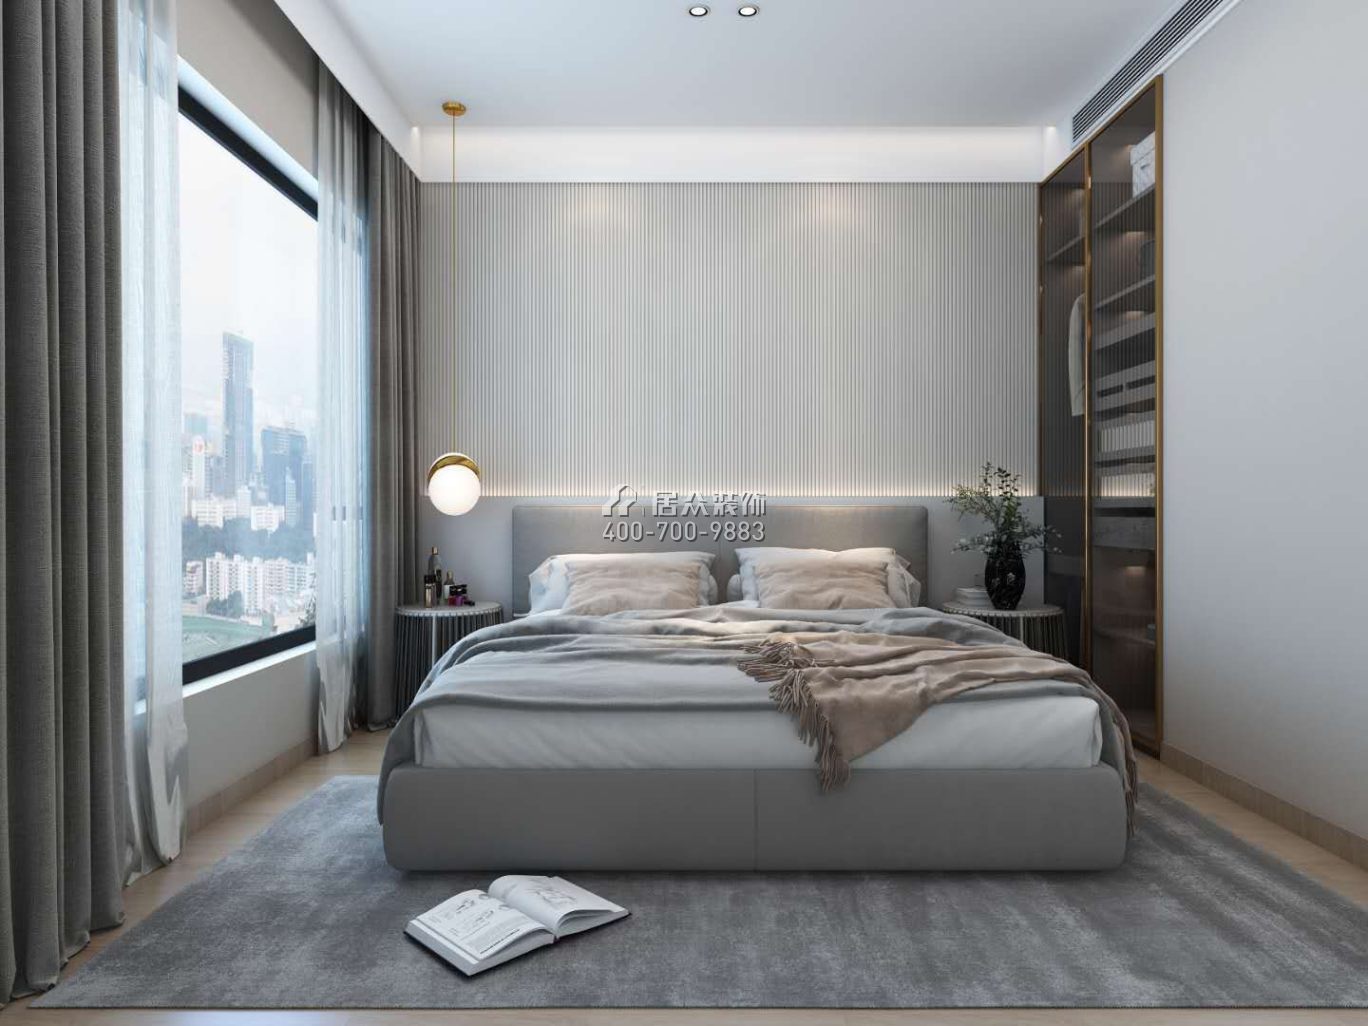 東關樂尚林居108平方米現代簡約風格平層戶型臥室裝修效果圖